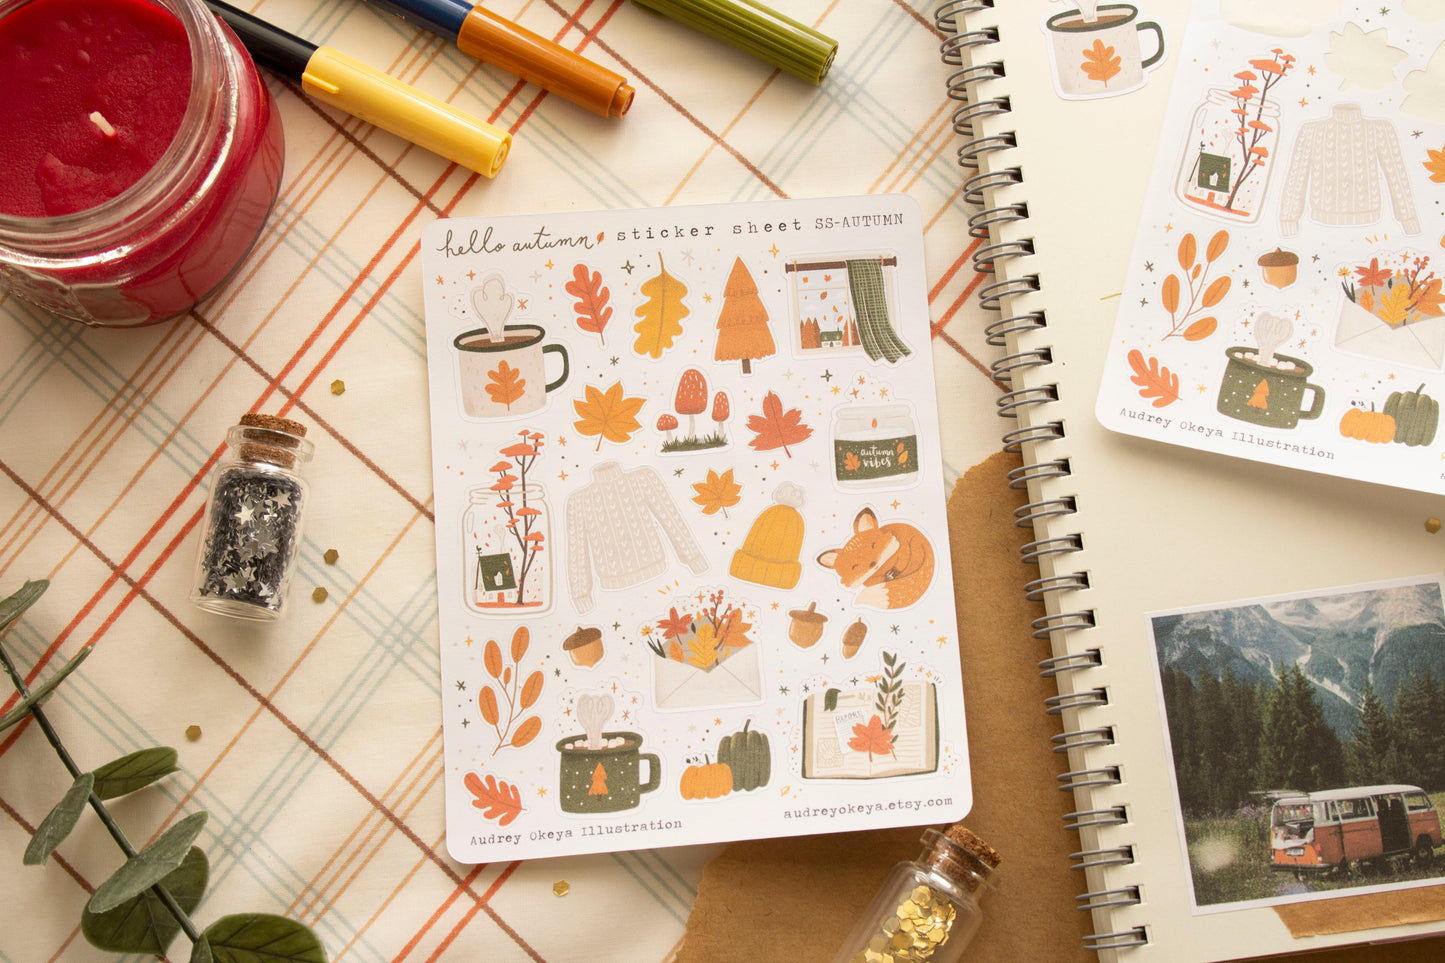 Hello Autumn Fall Sticker Sheet